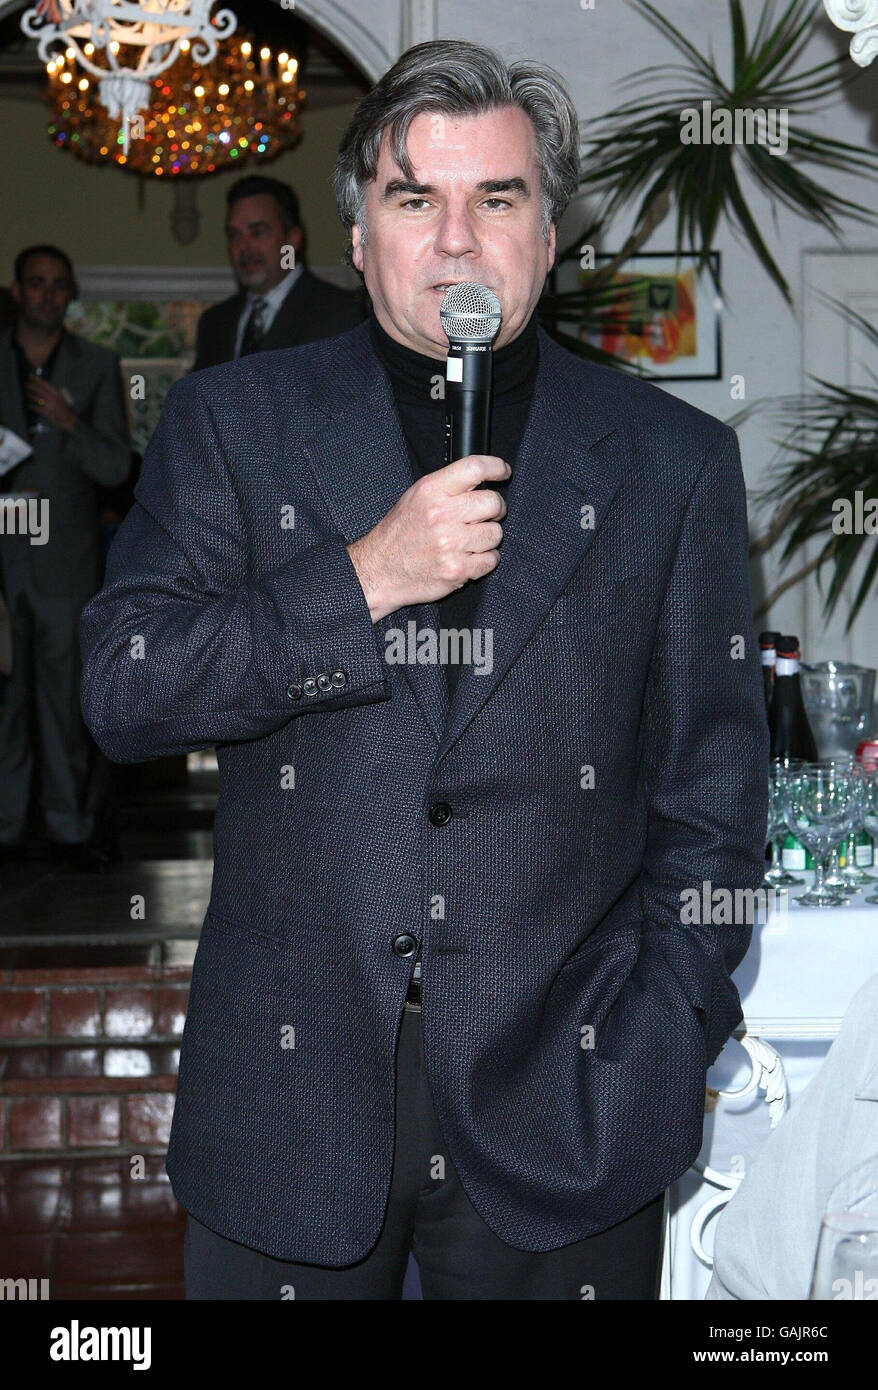 AP OUT: Bob Peirce le consul général britannique est vu lors d'une réception au champagne pour honorer les nominés britanniques de la 80e récompense annuelle de l'Académie. La réception a été organisée par le consul général britannique à Los Angeles. Banque D'Images